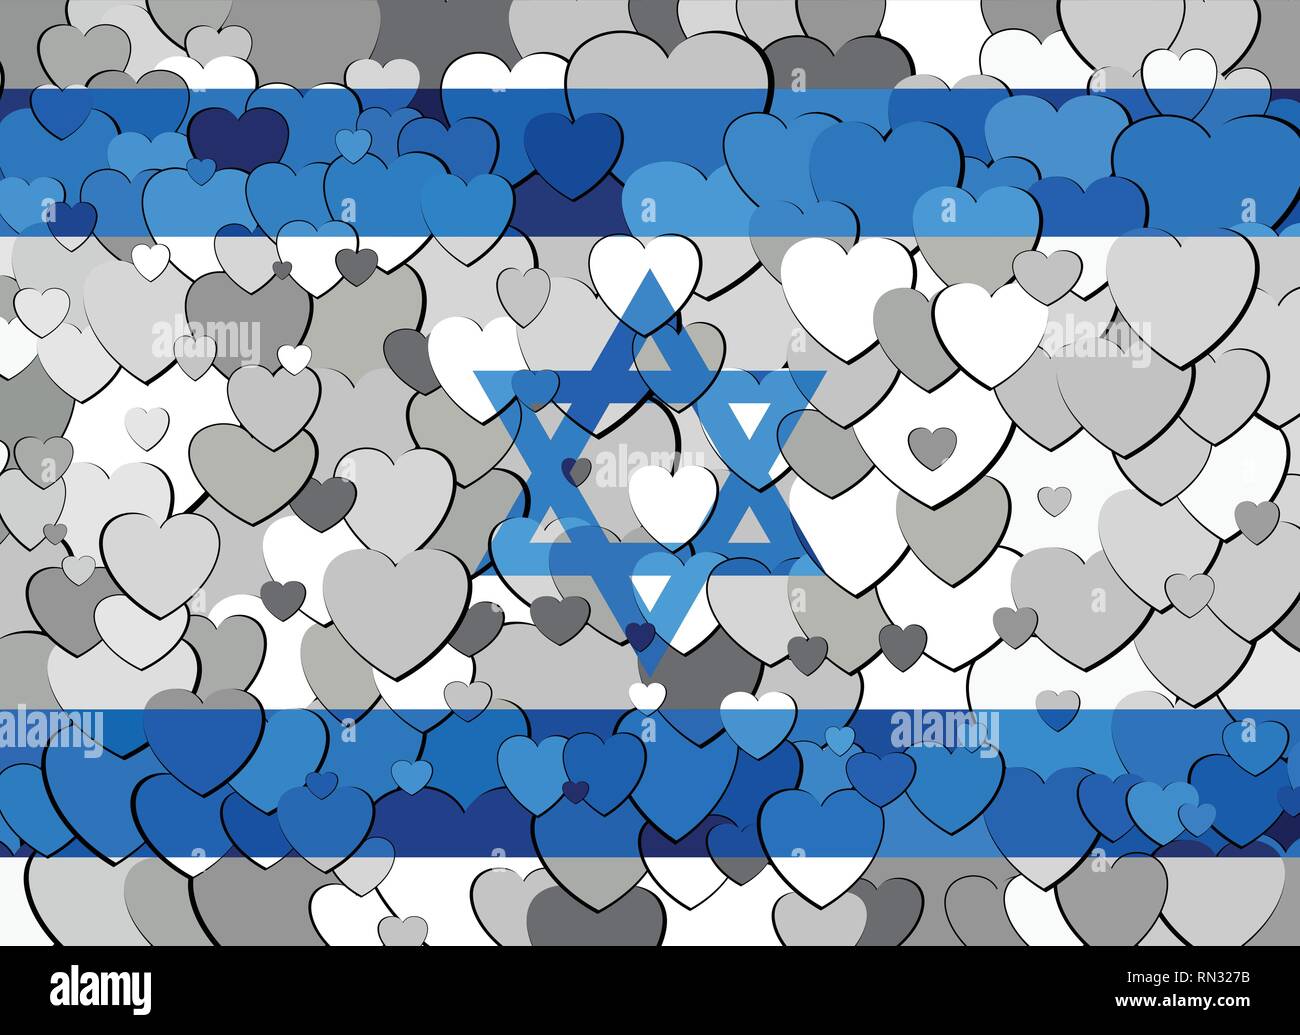 Israel Flagge aus Herzen Hintergrund - Abbildung Stock Vektor